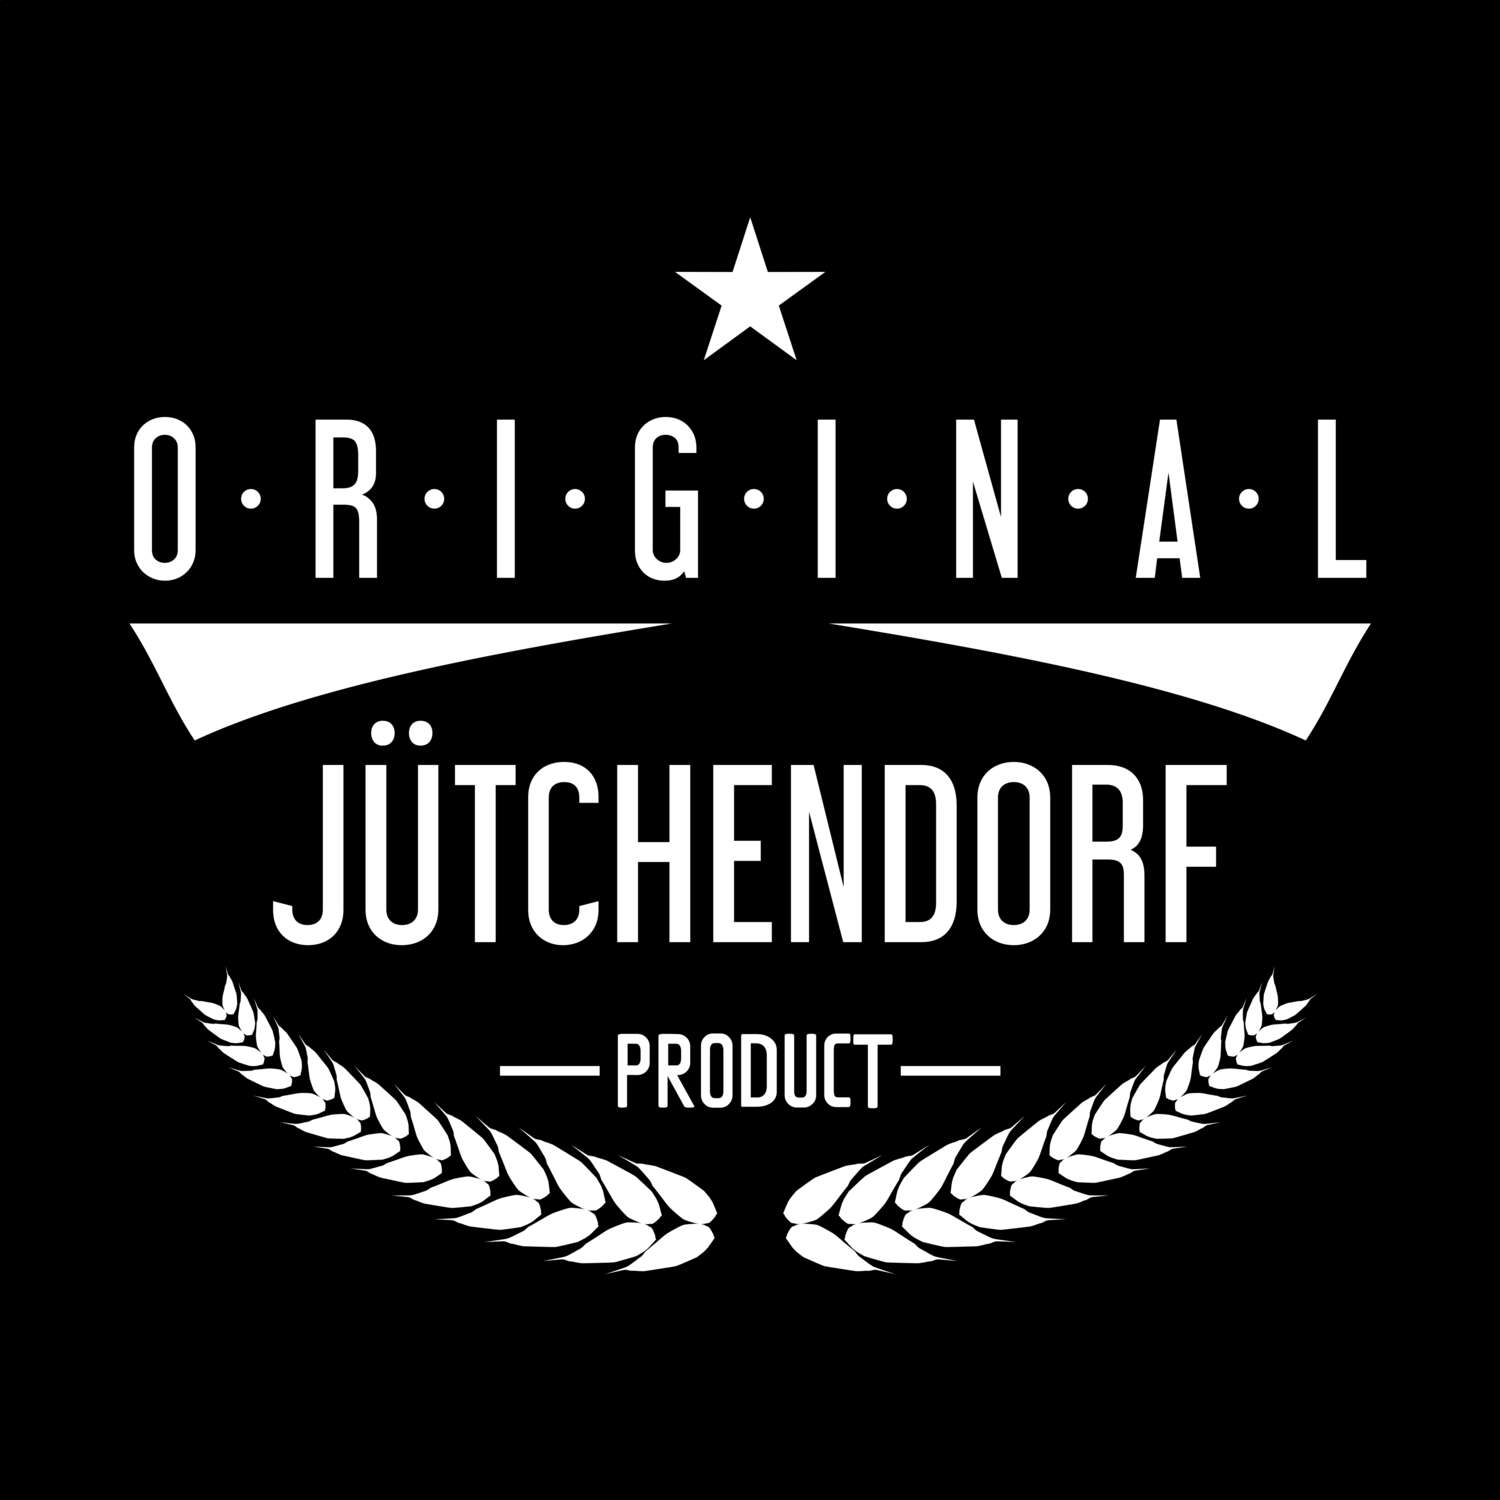 Jütchendorf T-Shirt »Original Product«